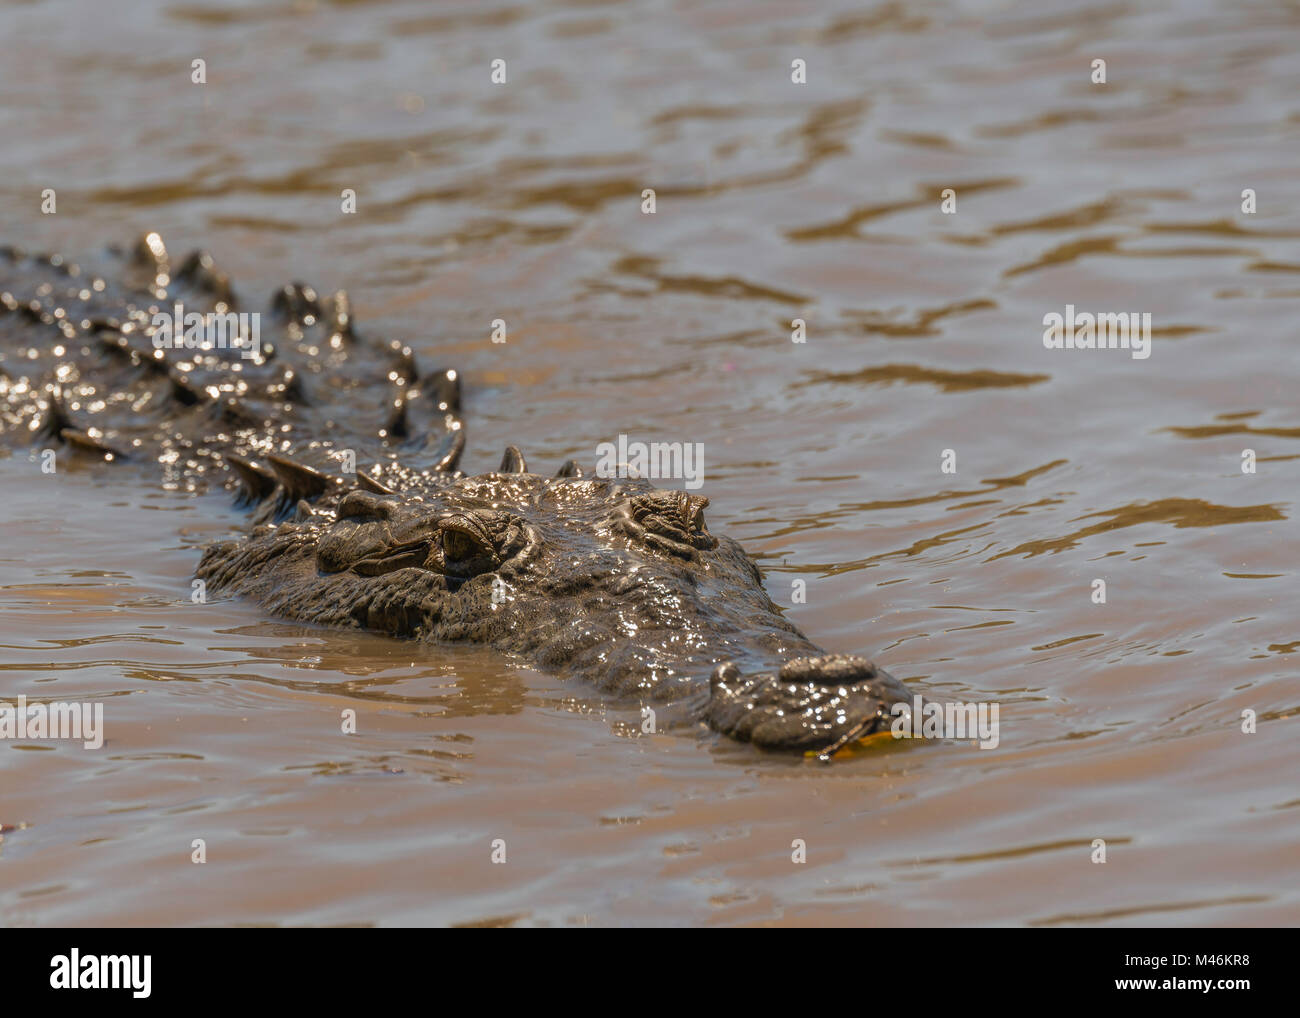 In den trüben Gewässern der Tempisque River in Costa Rica, ein Krokodil schwimmt langsam neben einem Boot. Stockfoto